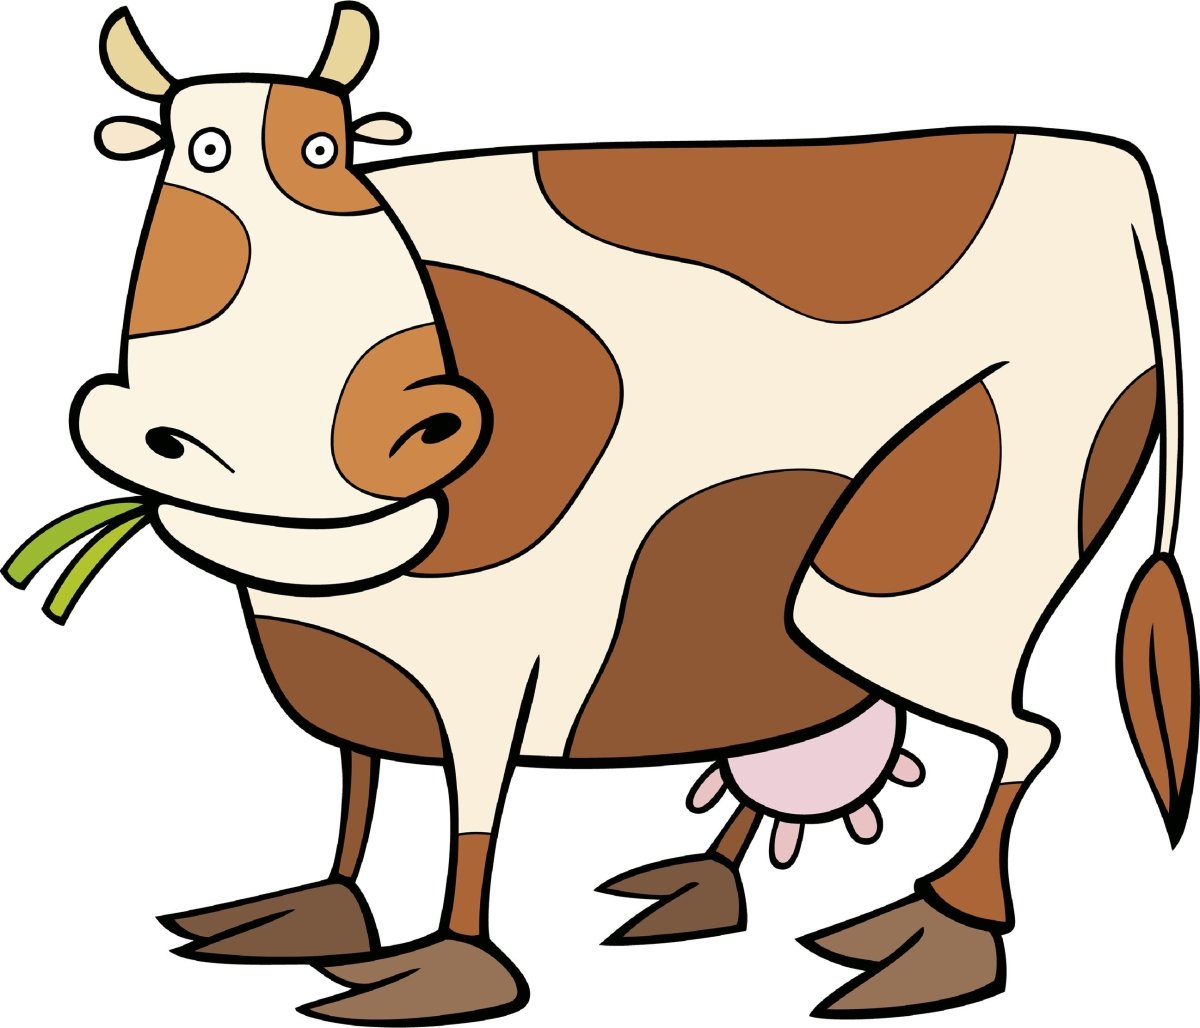 Wandsticker Kuh mit Flecken, Weiß, Braun, Kühe WS00000067 - Bild 4